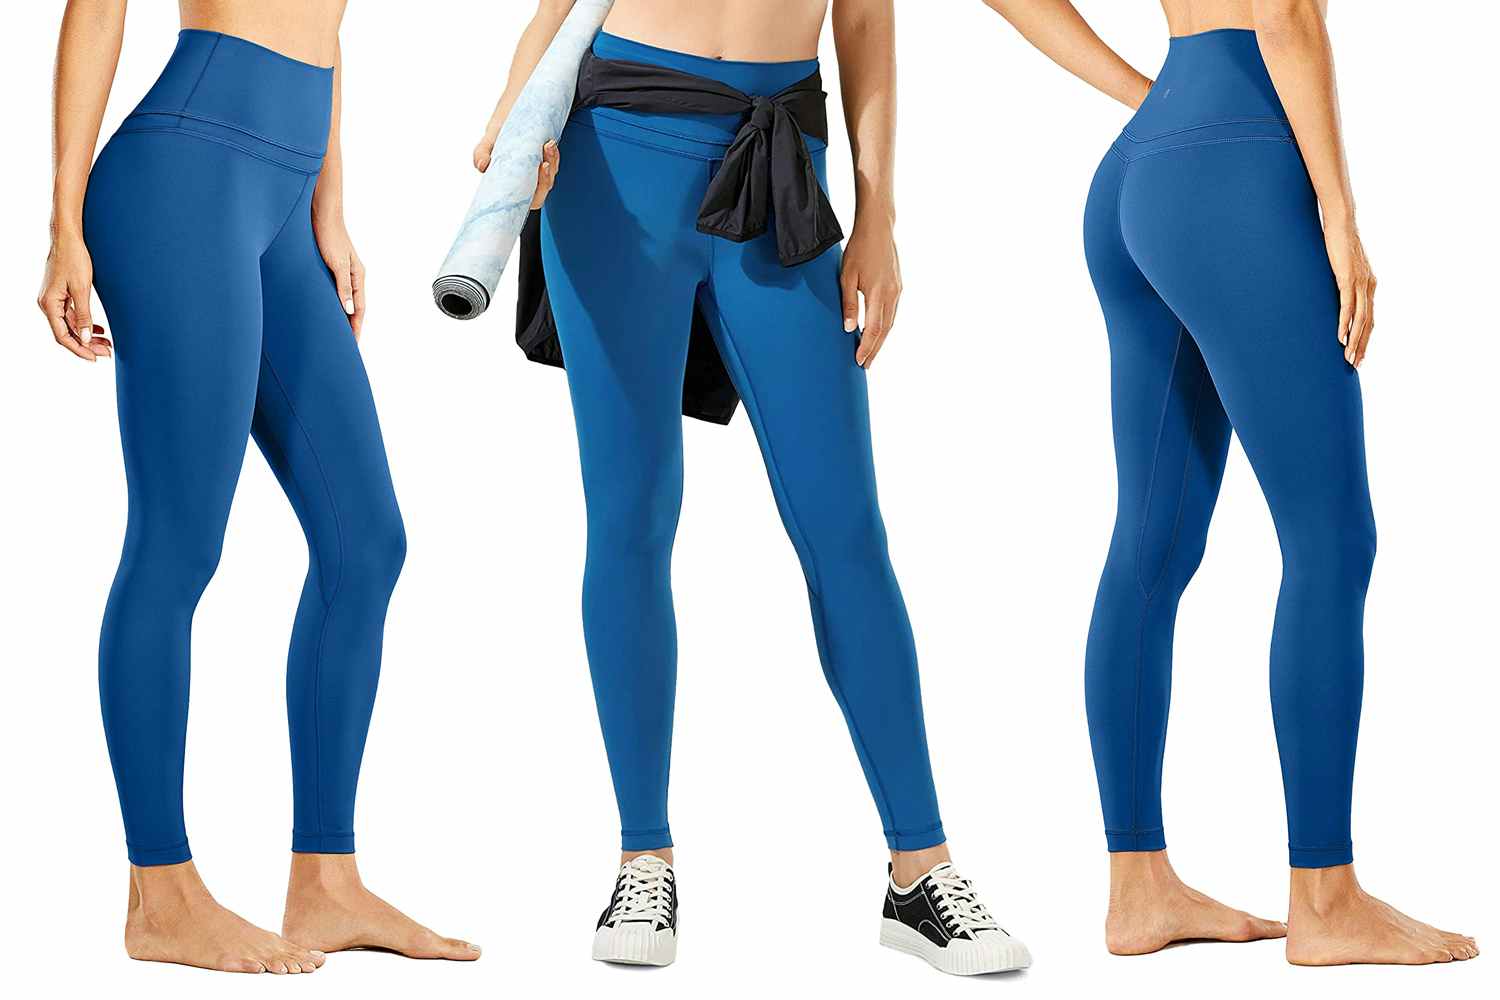 Colorfulkoala yoga pants. Size small. Navy blue. Leggings. - $14